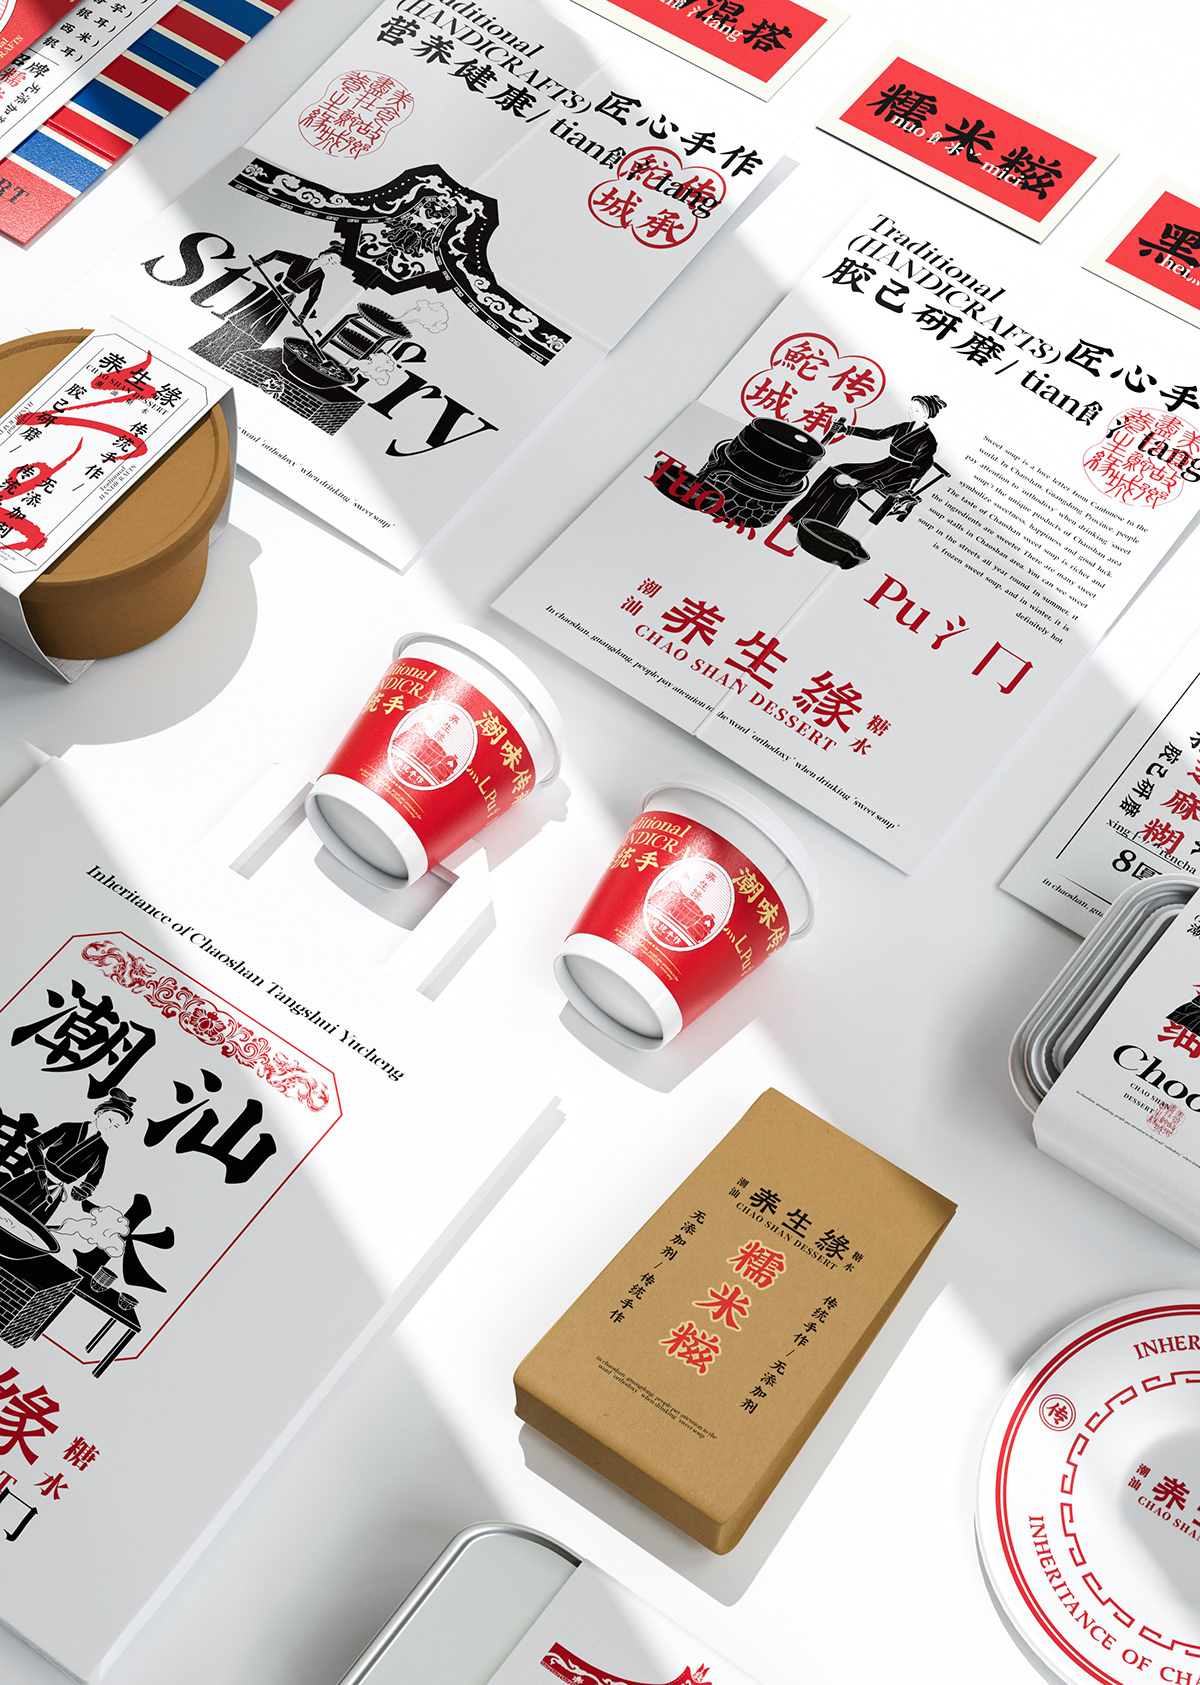 Brand Design brand identity identity logo Logo Design Poster Design visual visual identity 潮汕